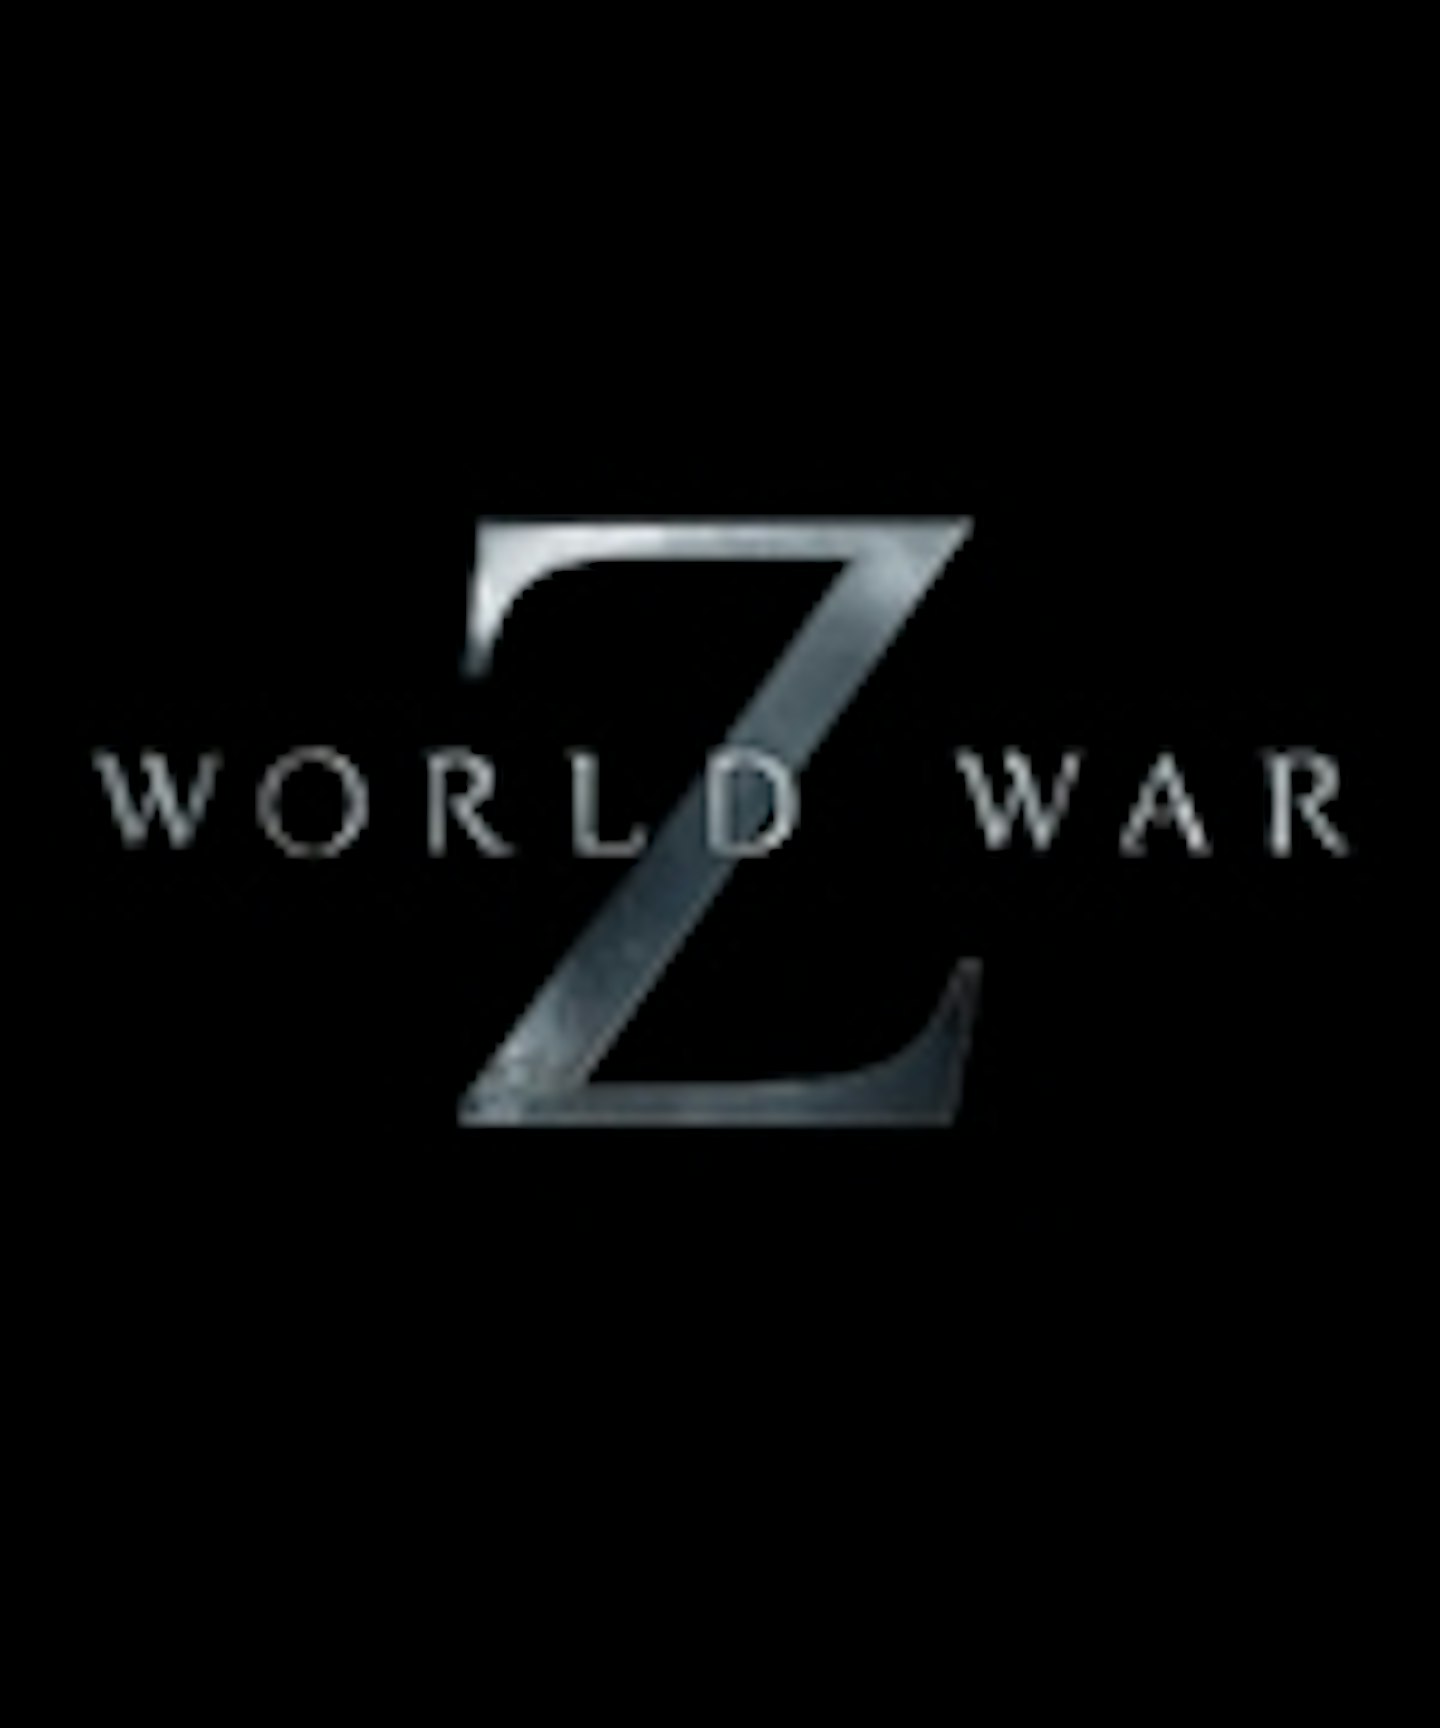 World War Z Teaser Poster Online